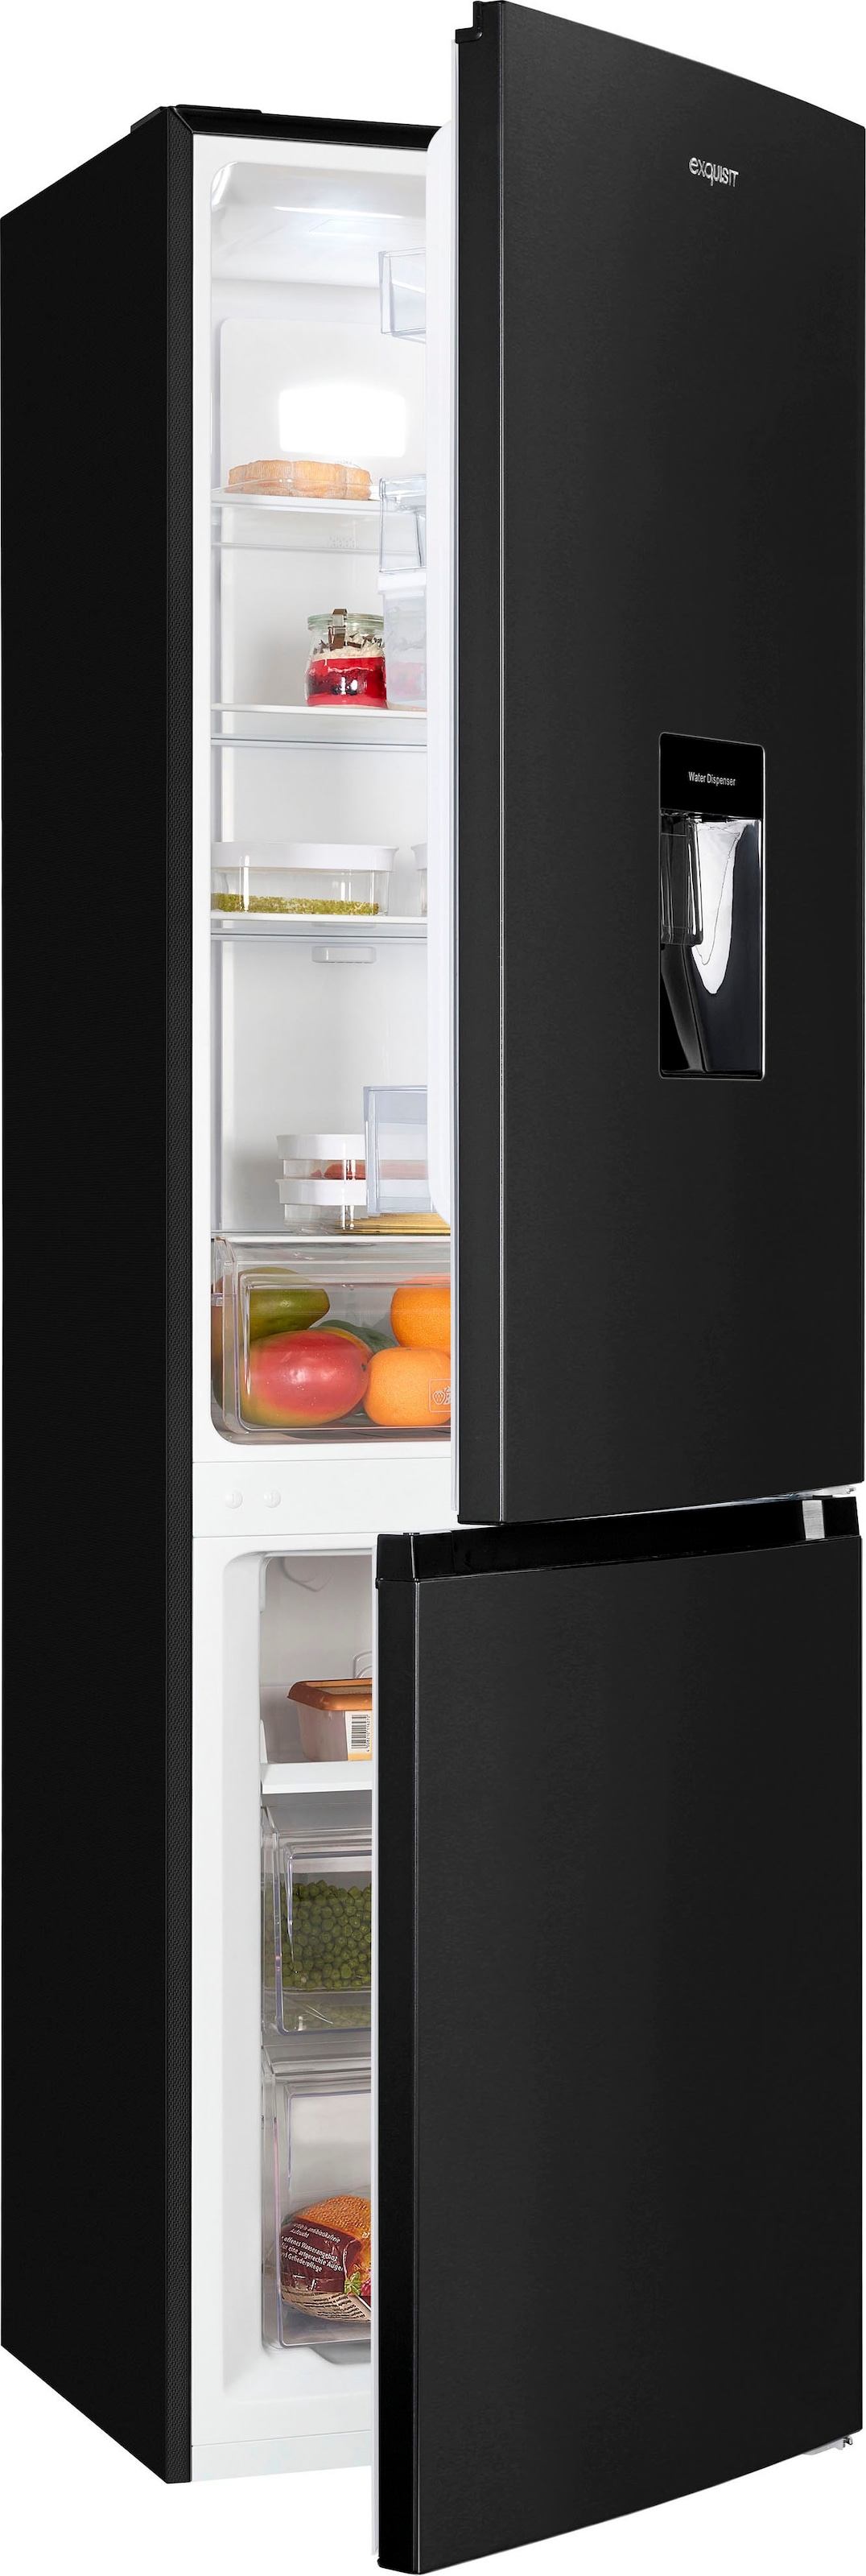 BAUR | online auf Rechnung & Kühlschränke kaufen Raten Exquisit